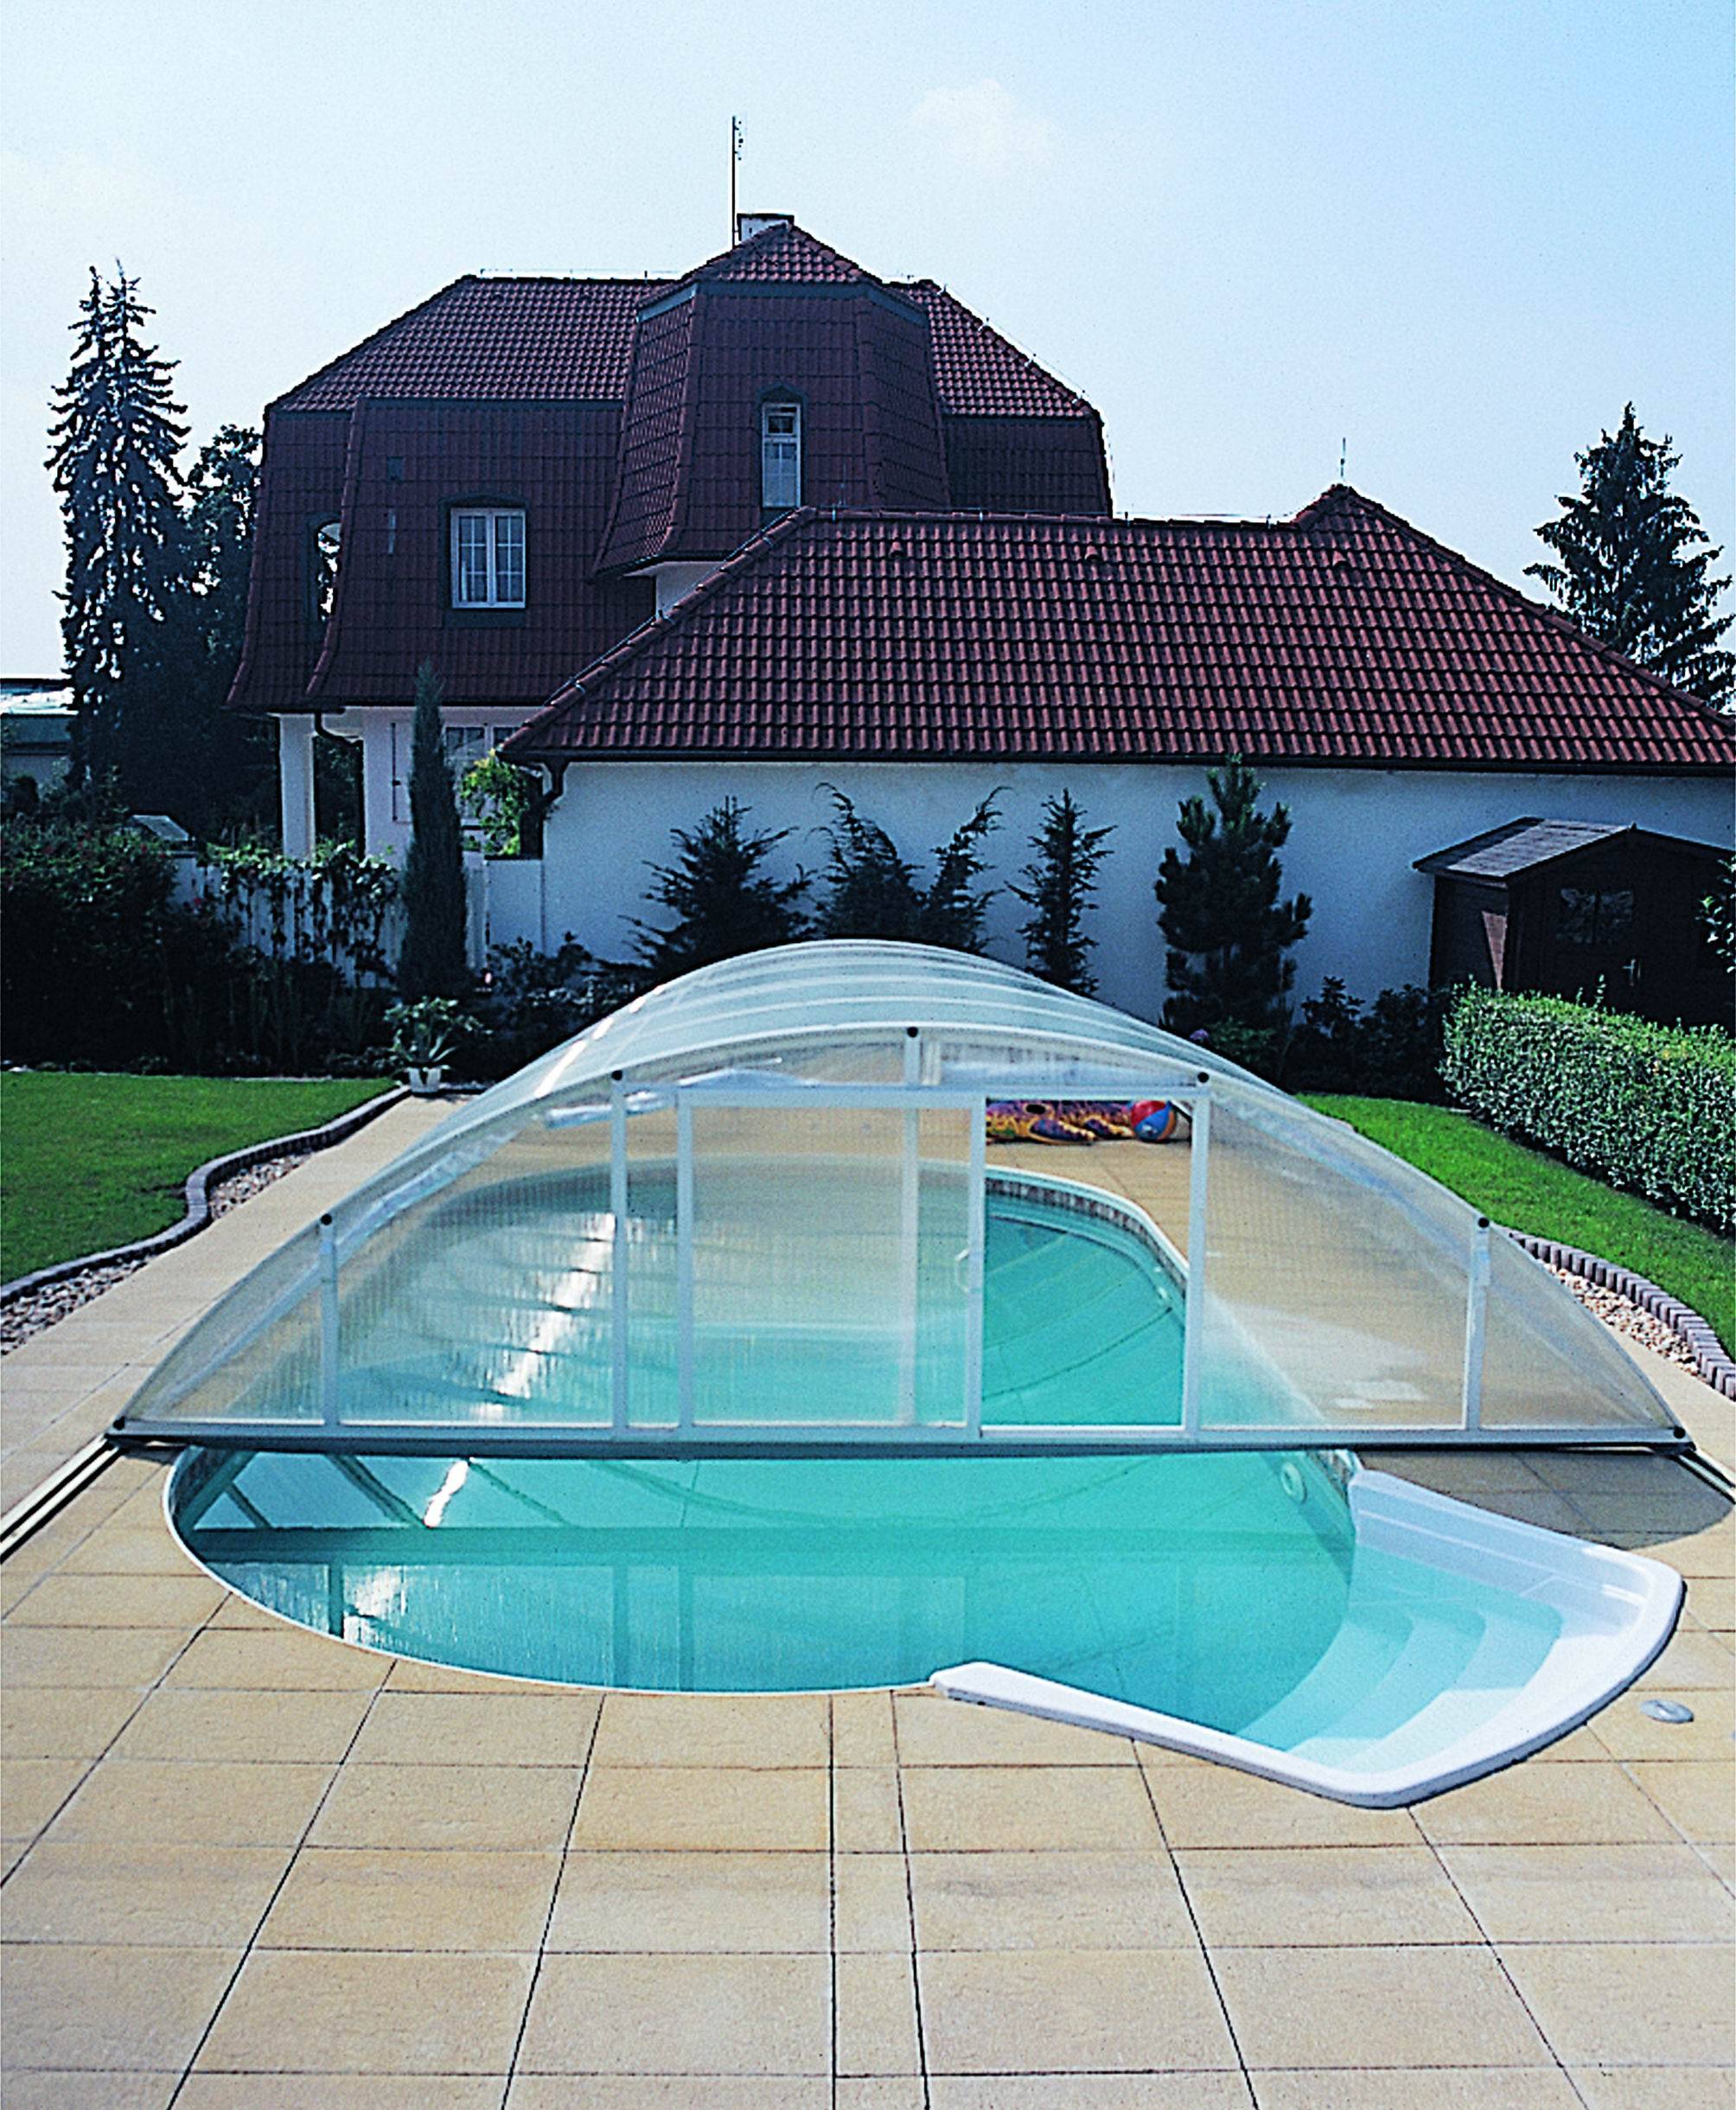 Как сделать крытый бассейн на даче своими руками +фото: пошагово, размеры- обзор +видео